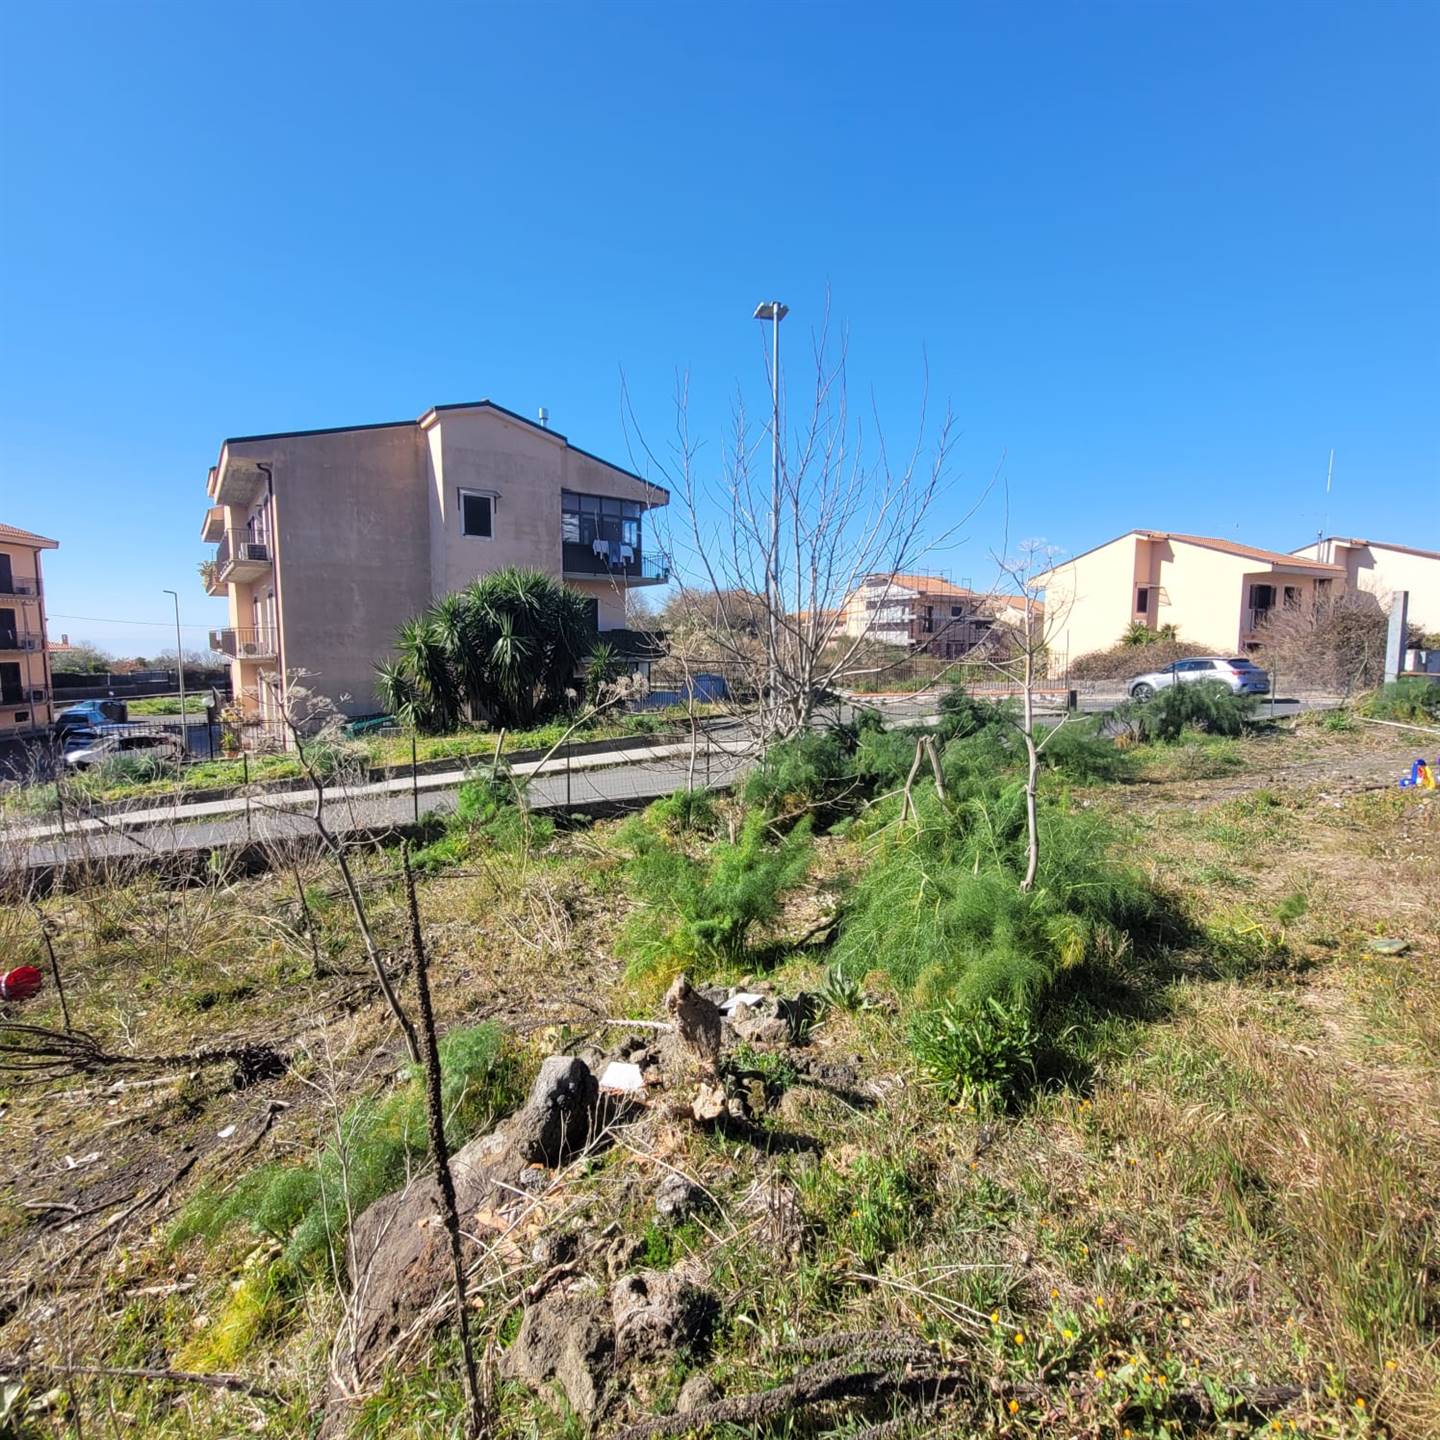 Terreno Edificabile Residenziale in vendita a Belpasso, 9999 locali, prezzo € 75.000 | PortaleAgenzieImmobiliari.it